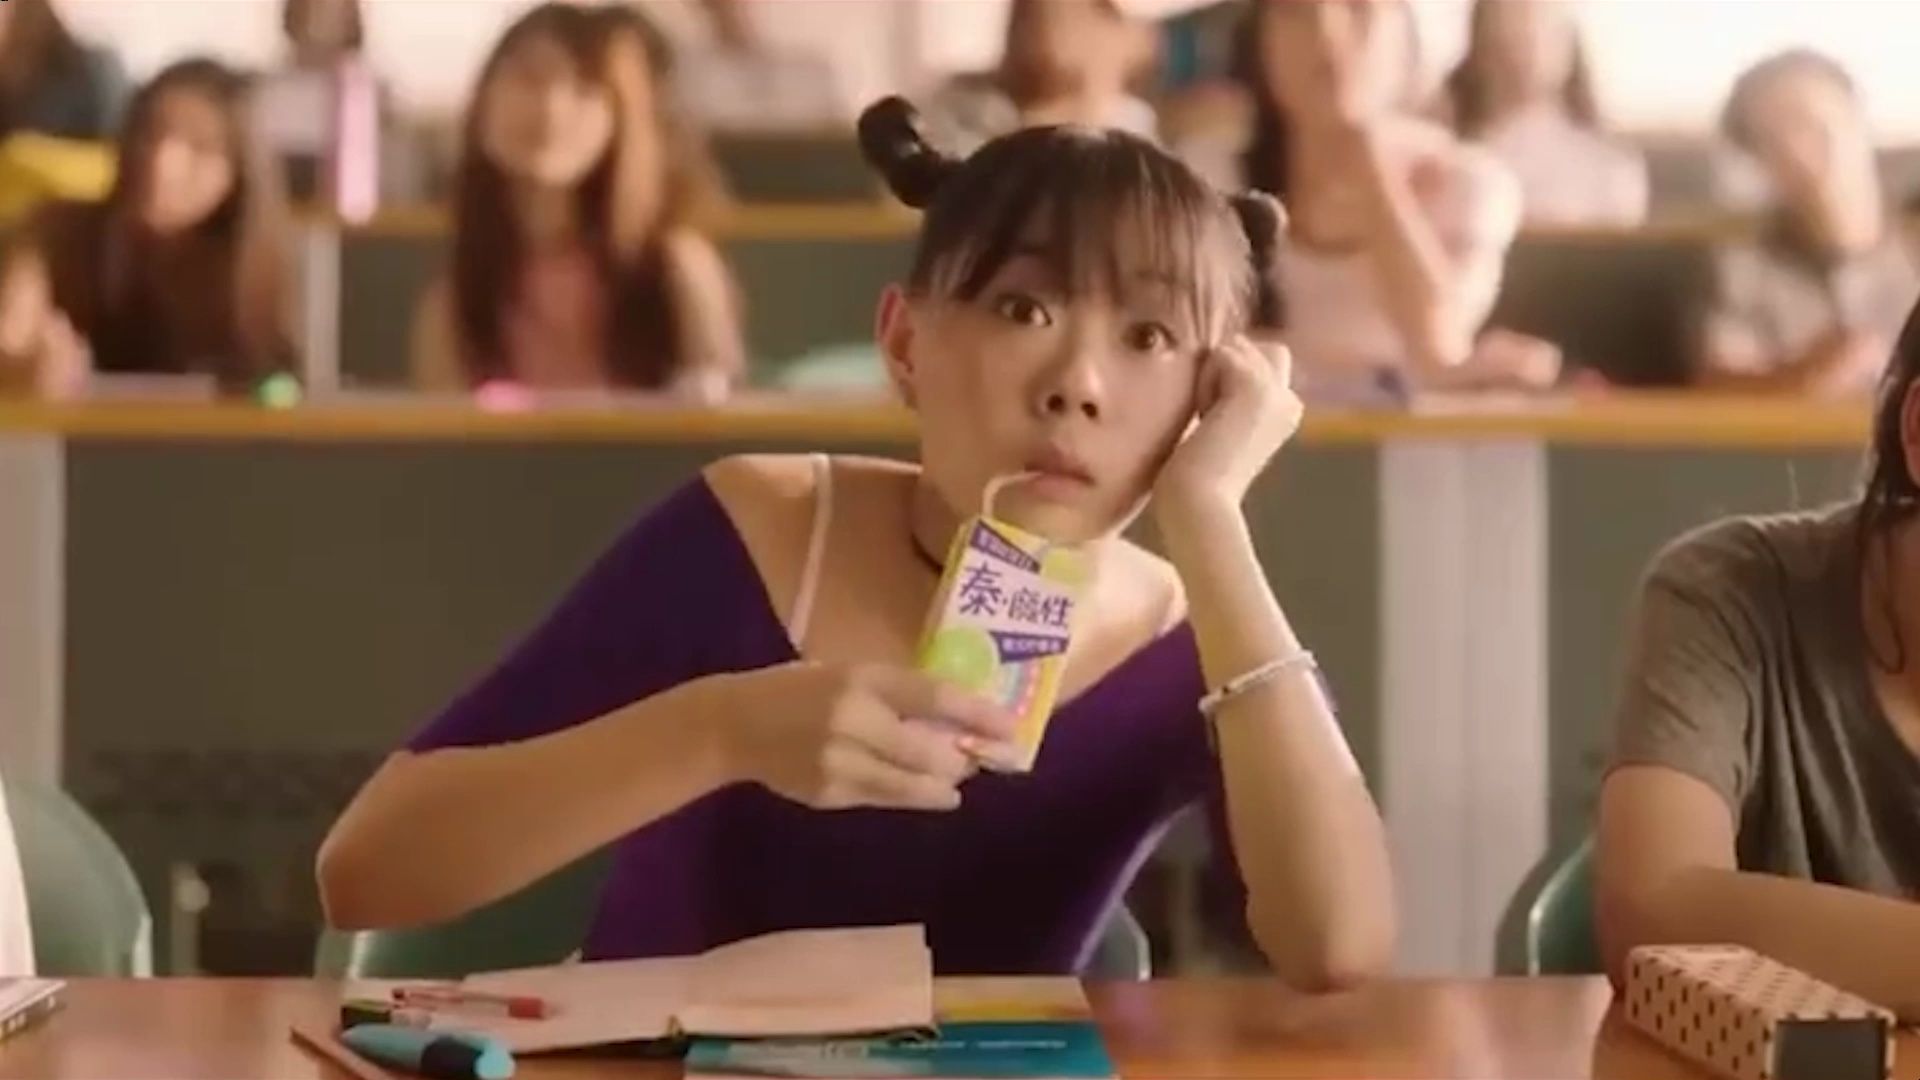 泰国广告的脑洞真的不服不行啊，哈哈哈哈......